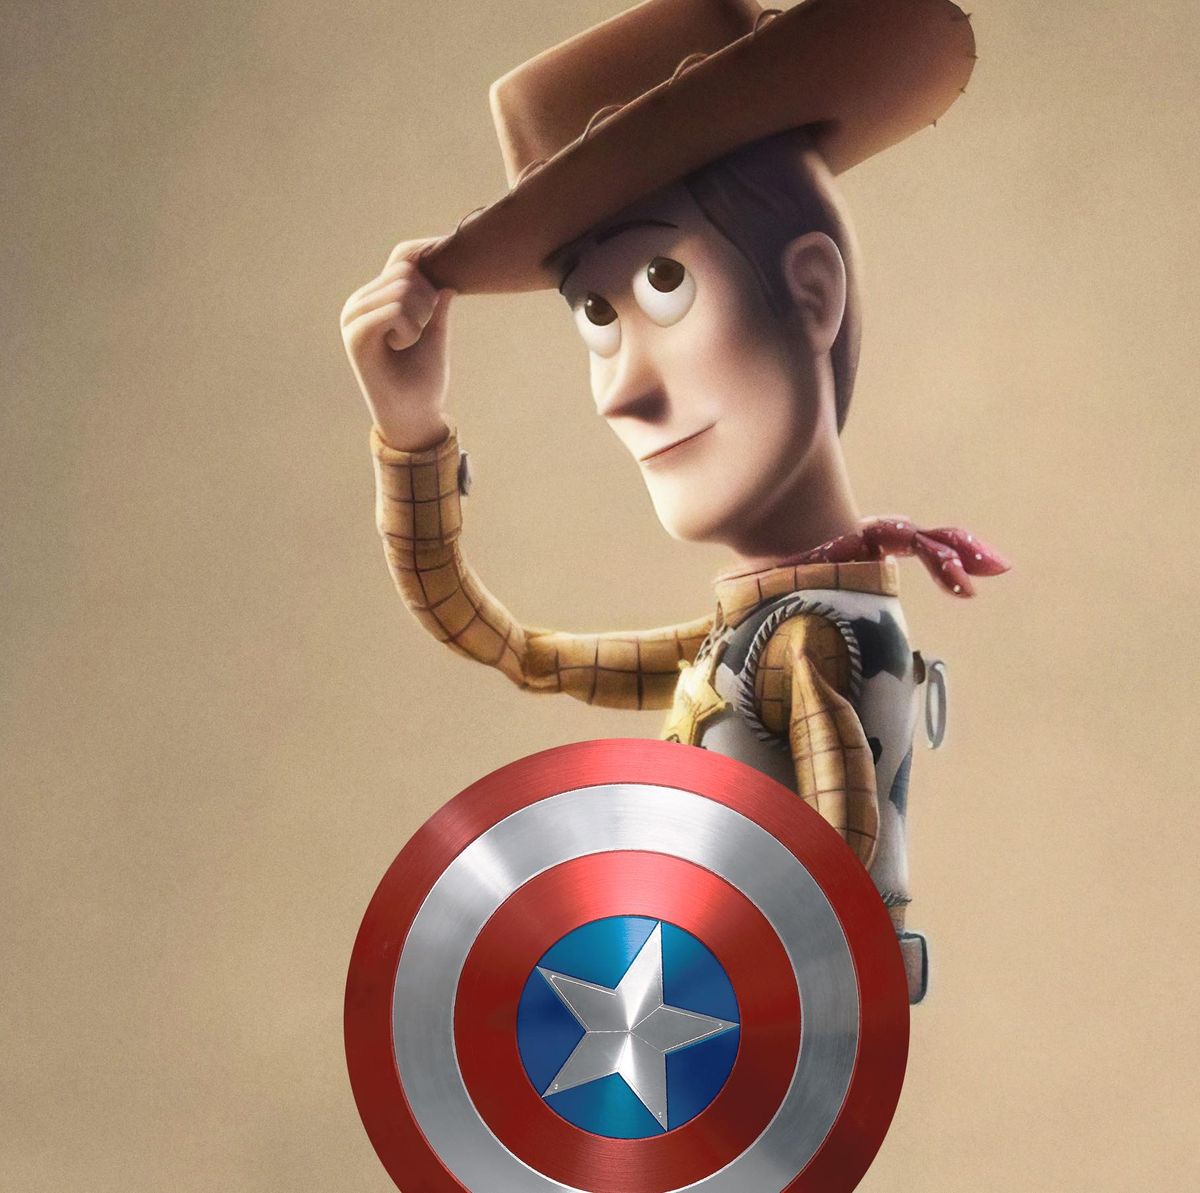 Mucho principal vestido Toy Story 4: Woody es el Capitán América de Pixar